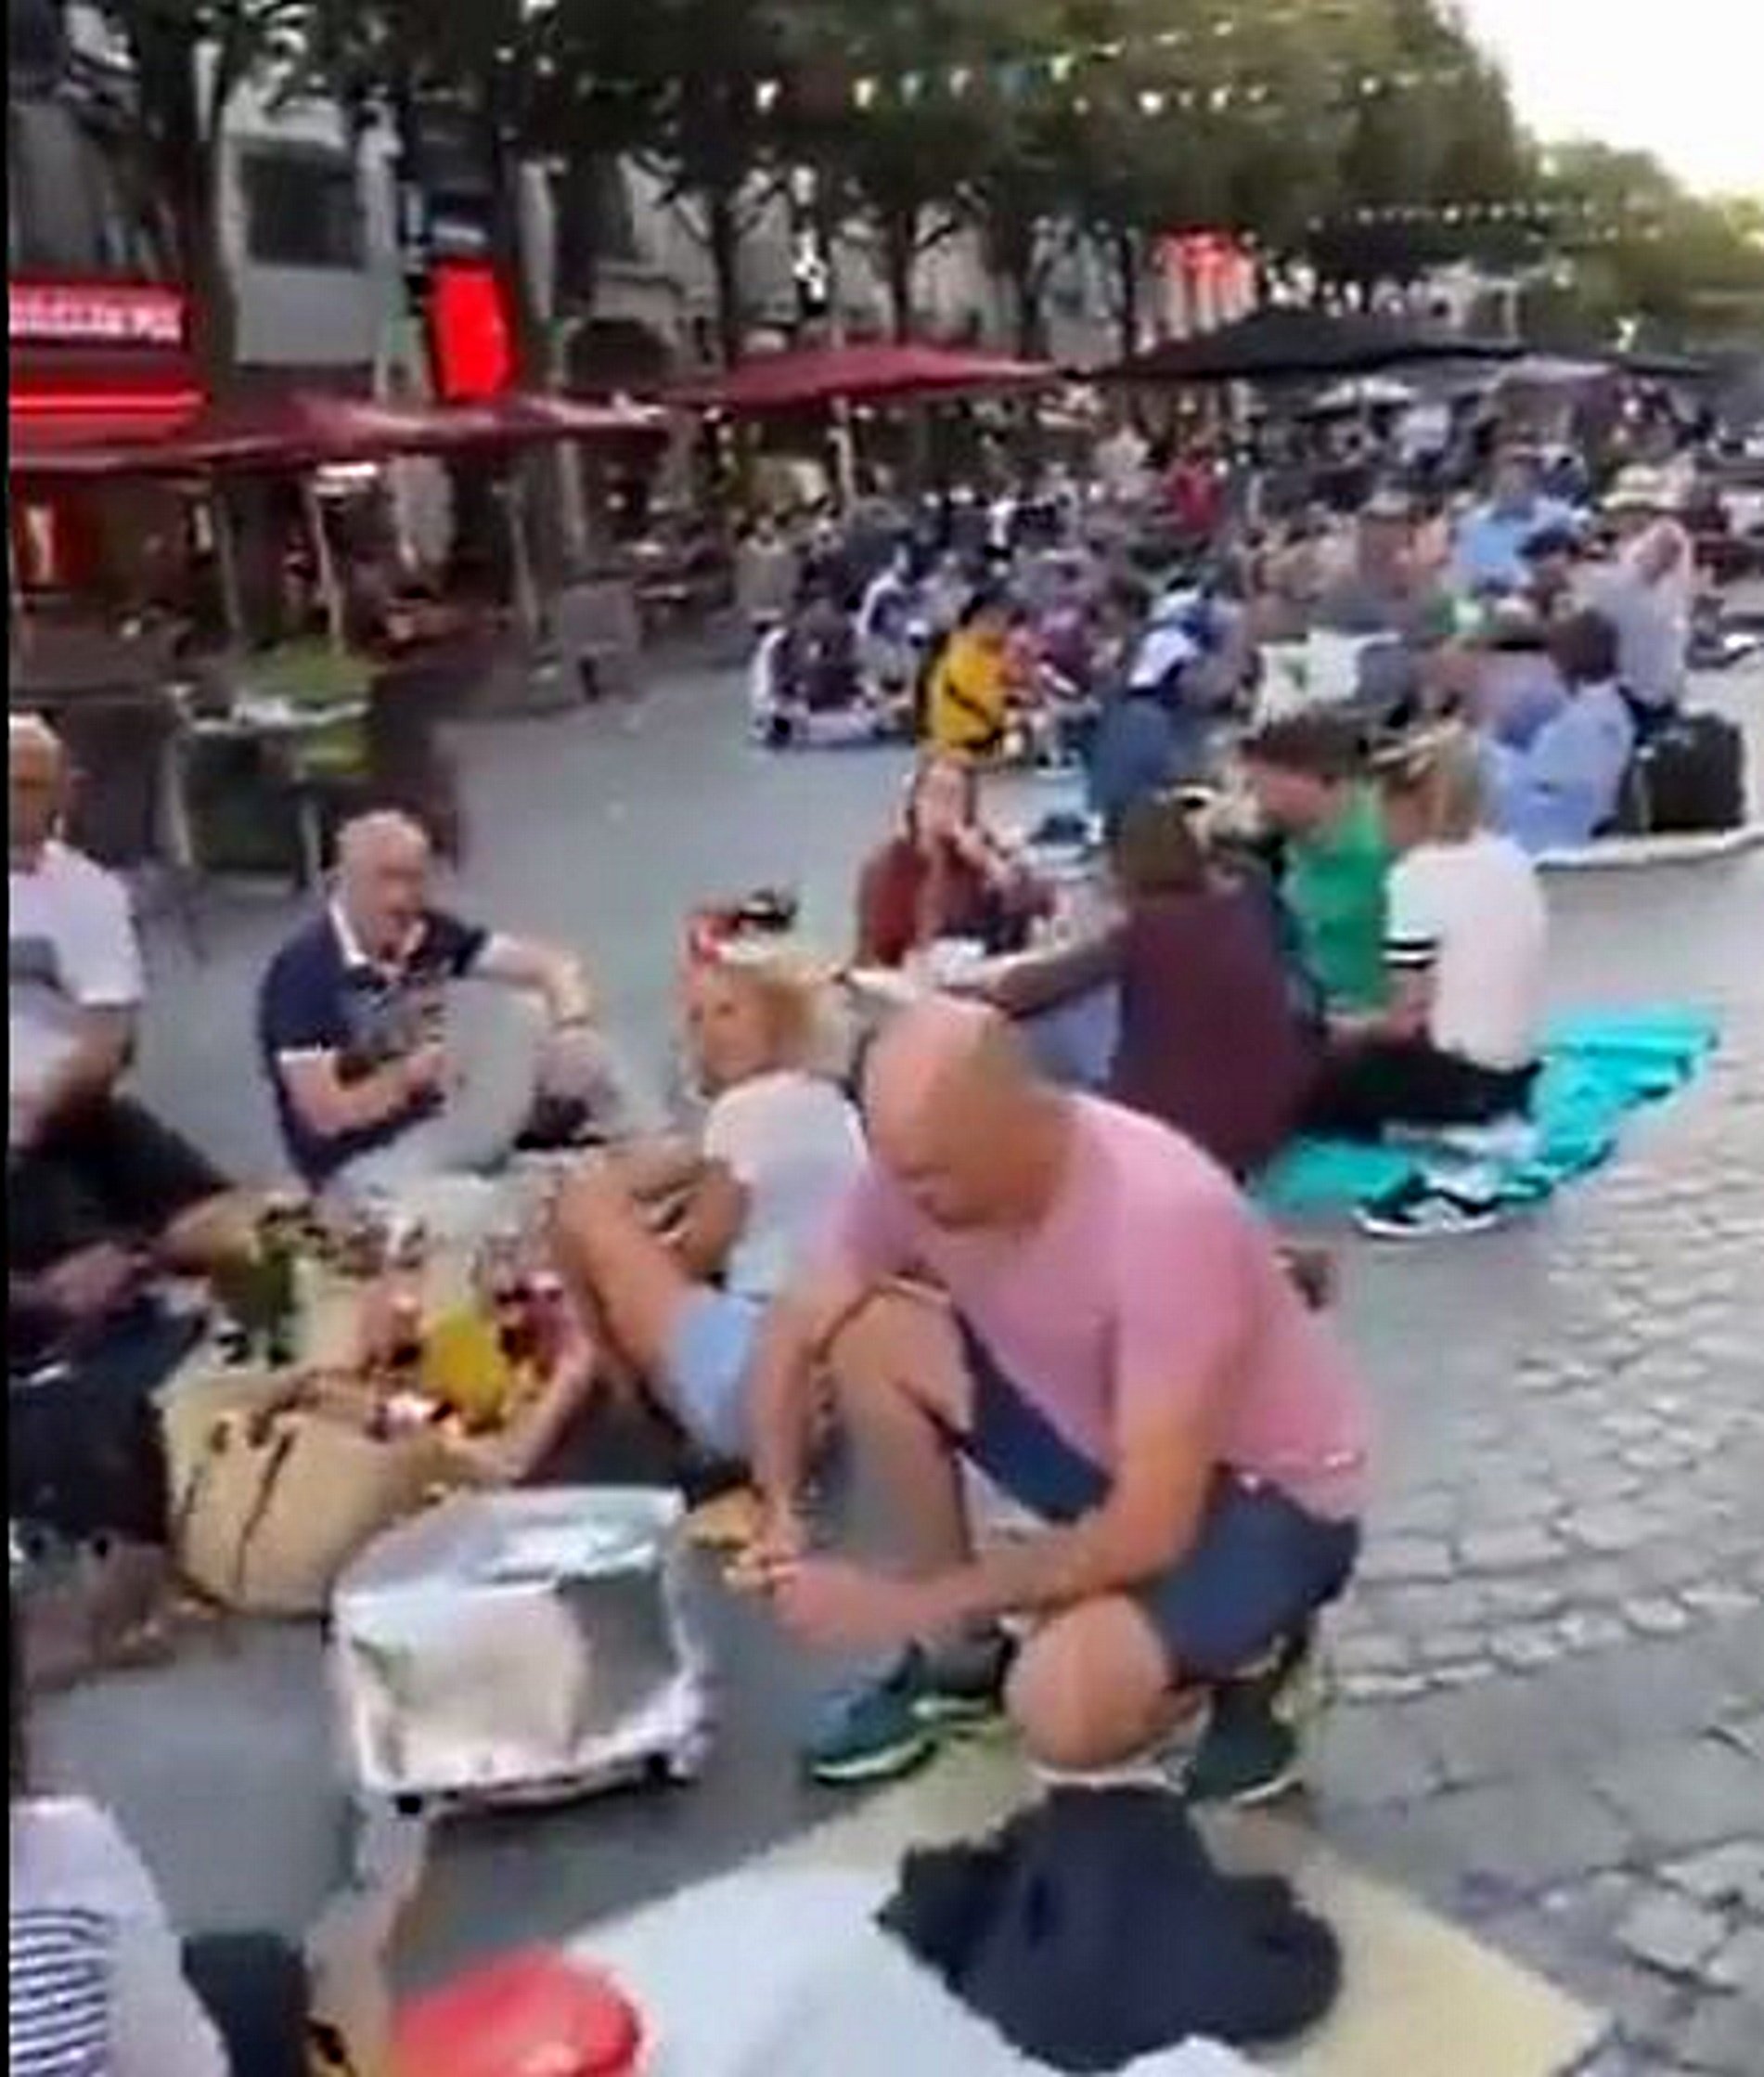 La obligatoriedad del QR en bares y restaurantes en Francia choca con problemas